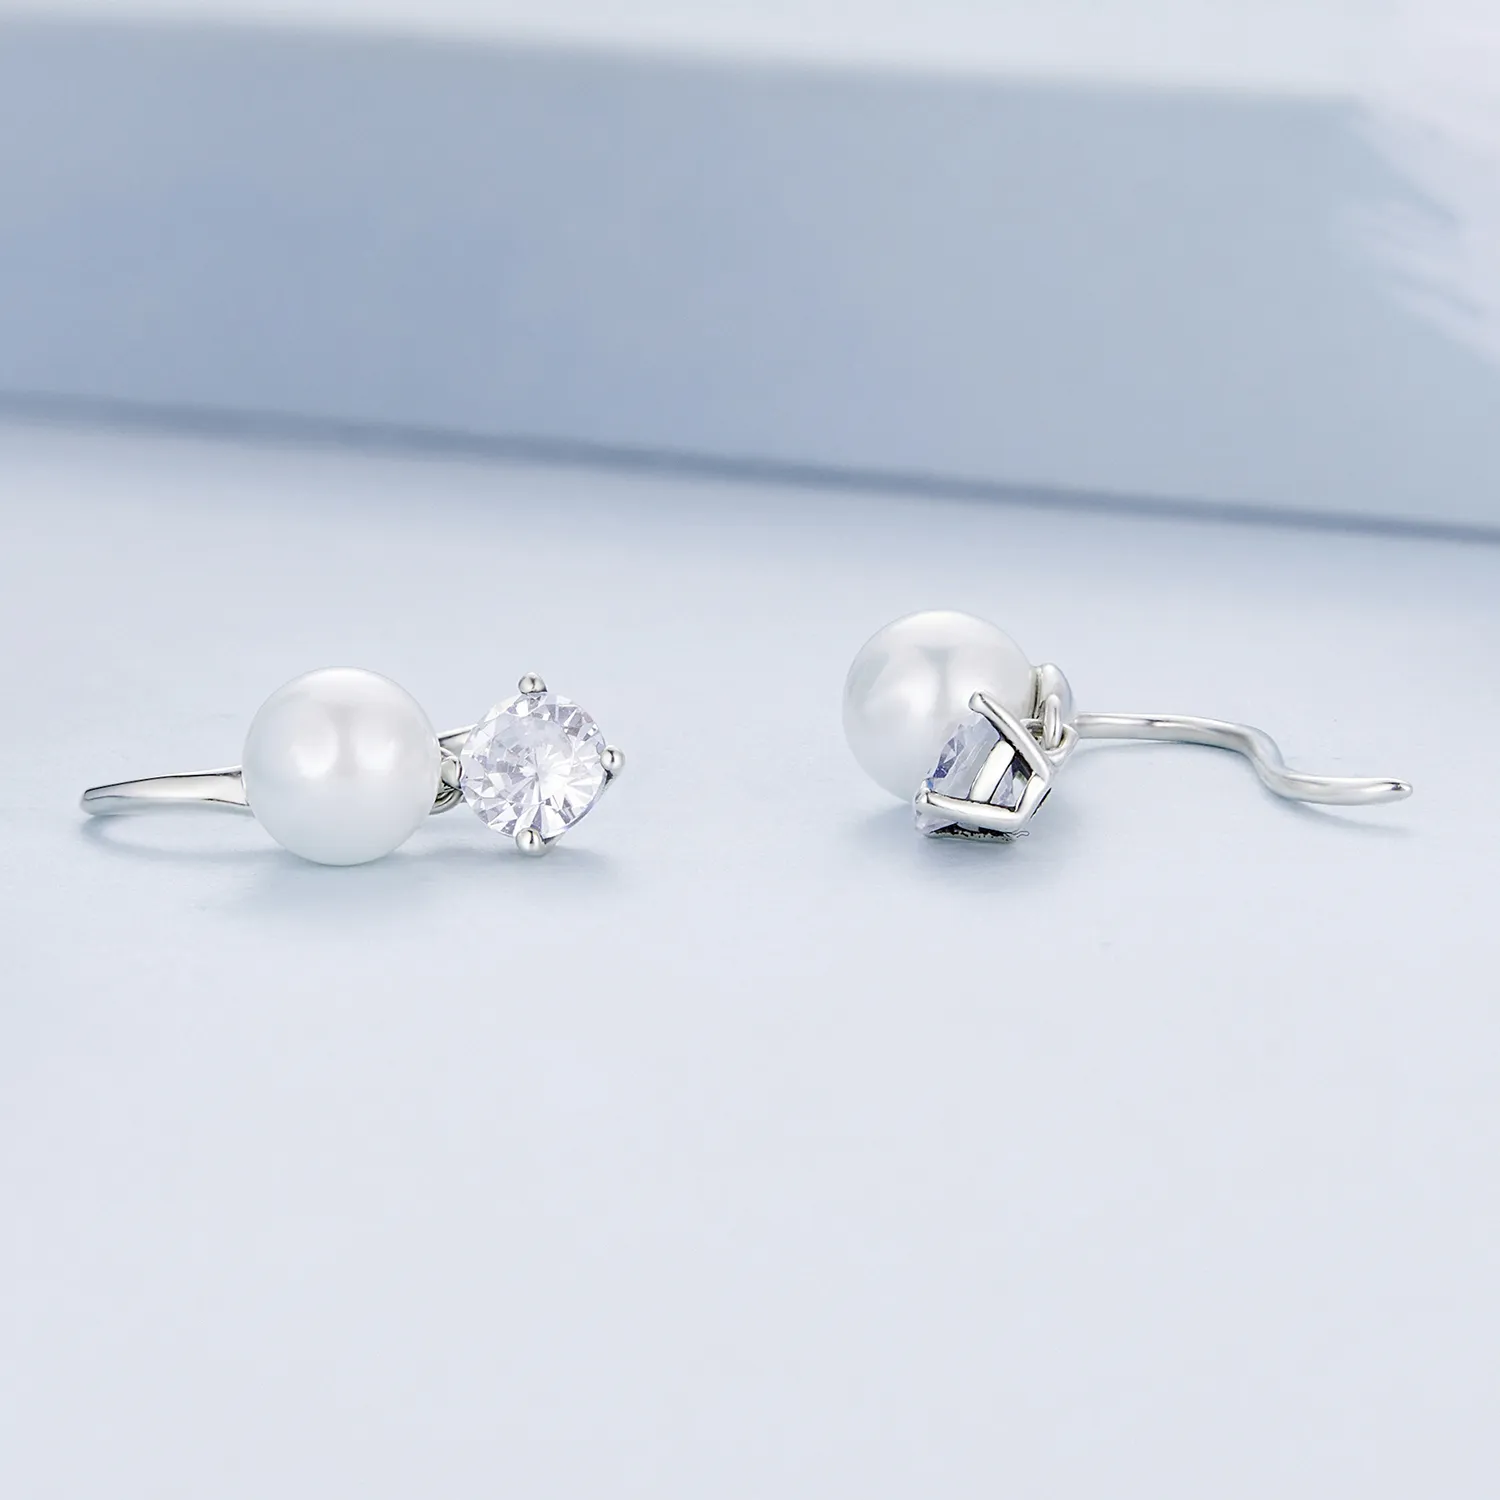 Pandora Style Pearl Stud Earrings - BSE684